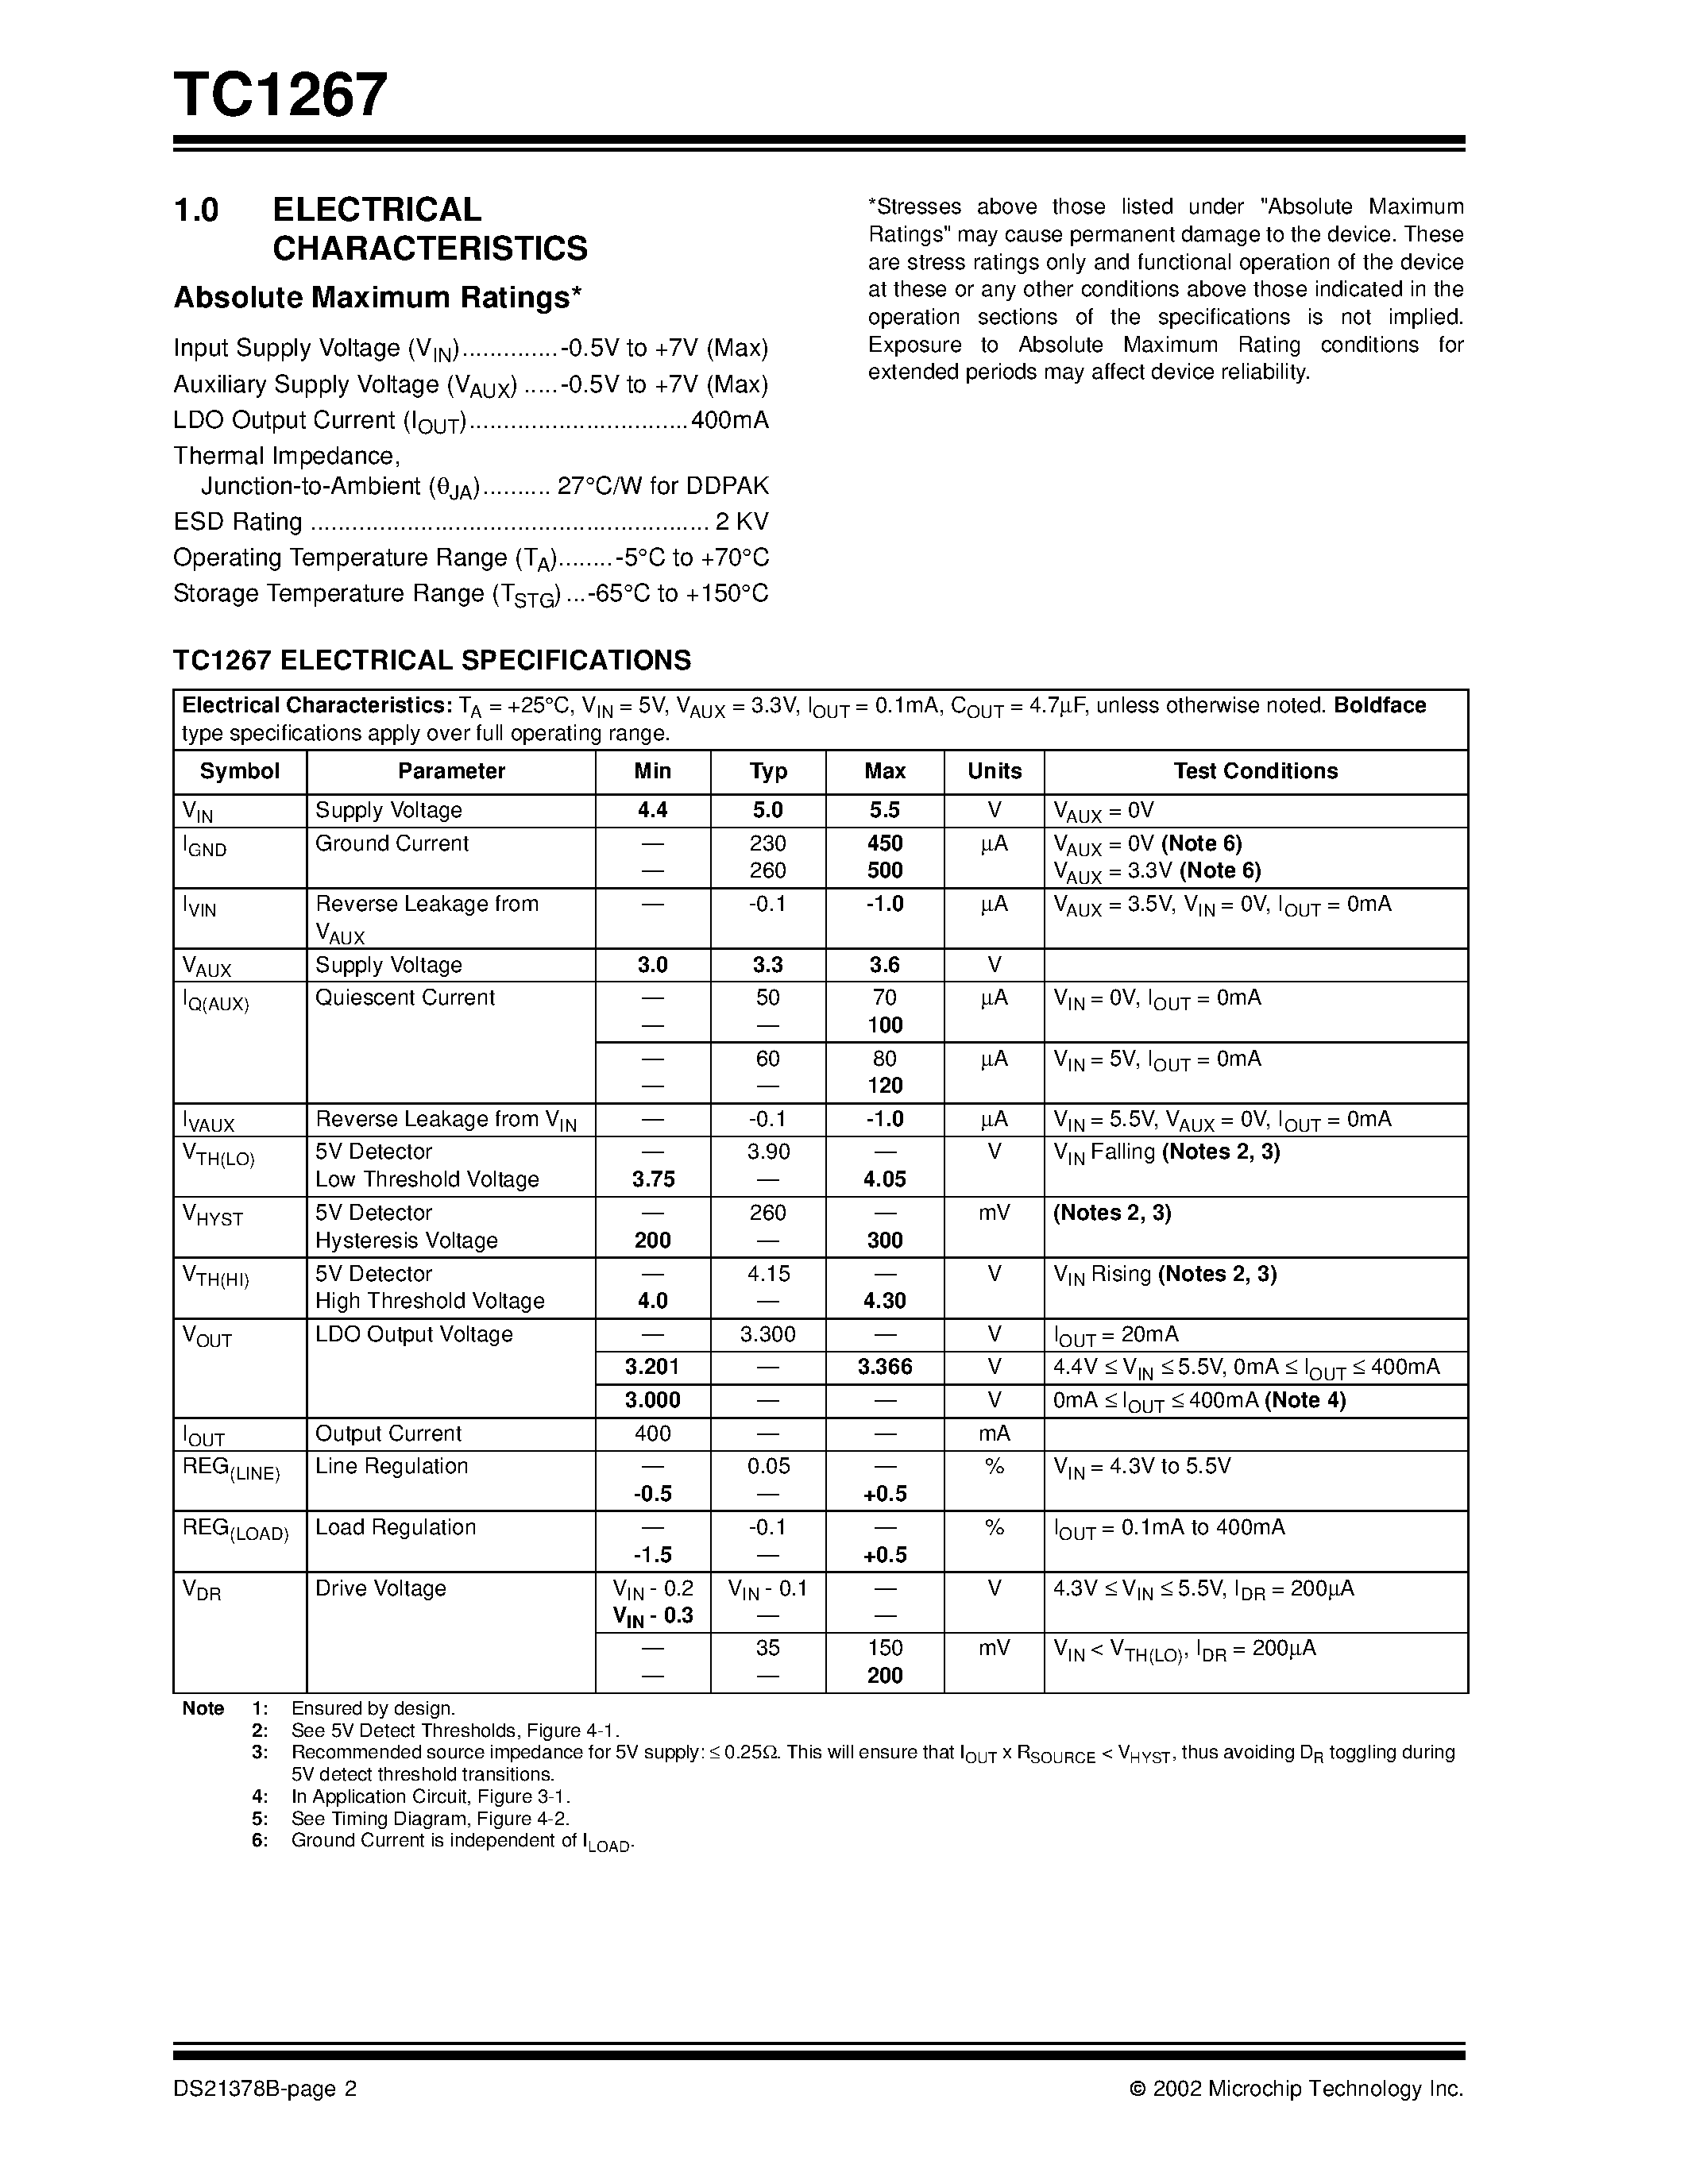 Datasheet TC1267 - 400mA PCI LDO page 2